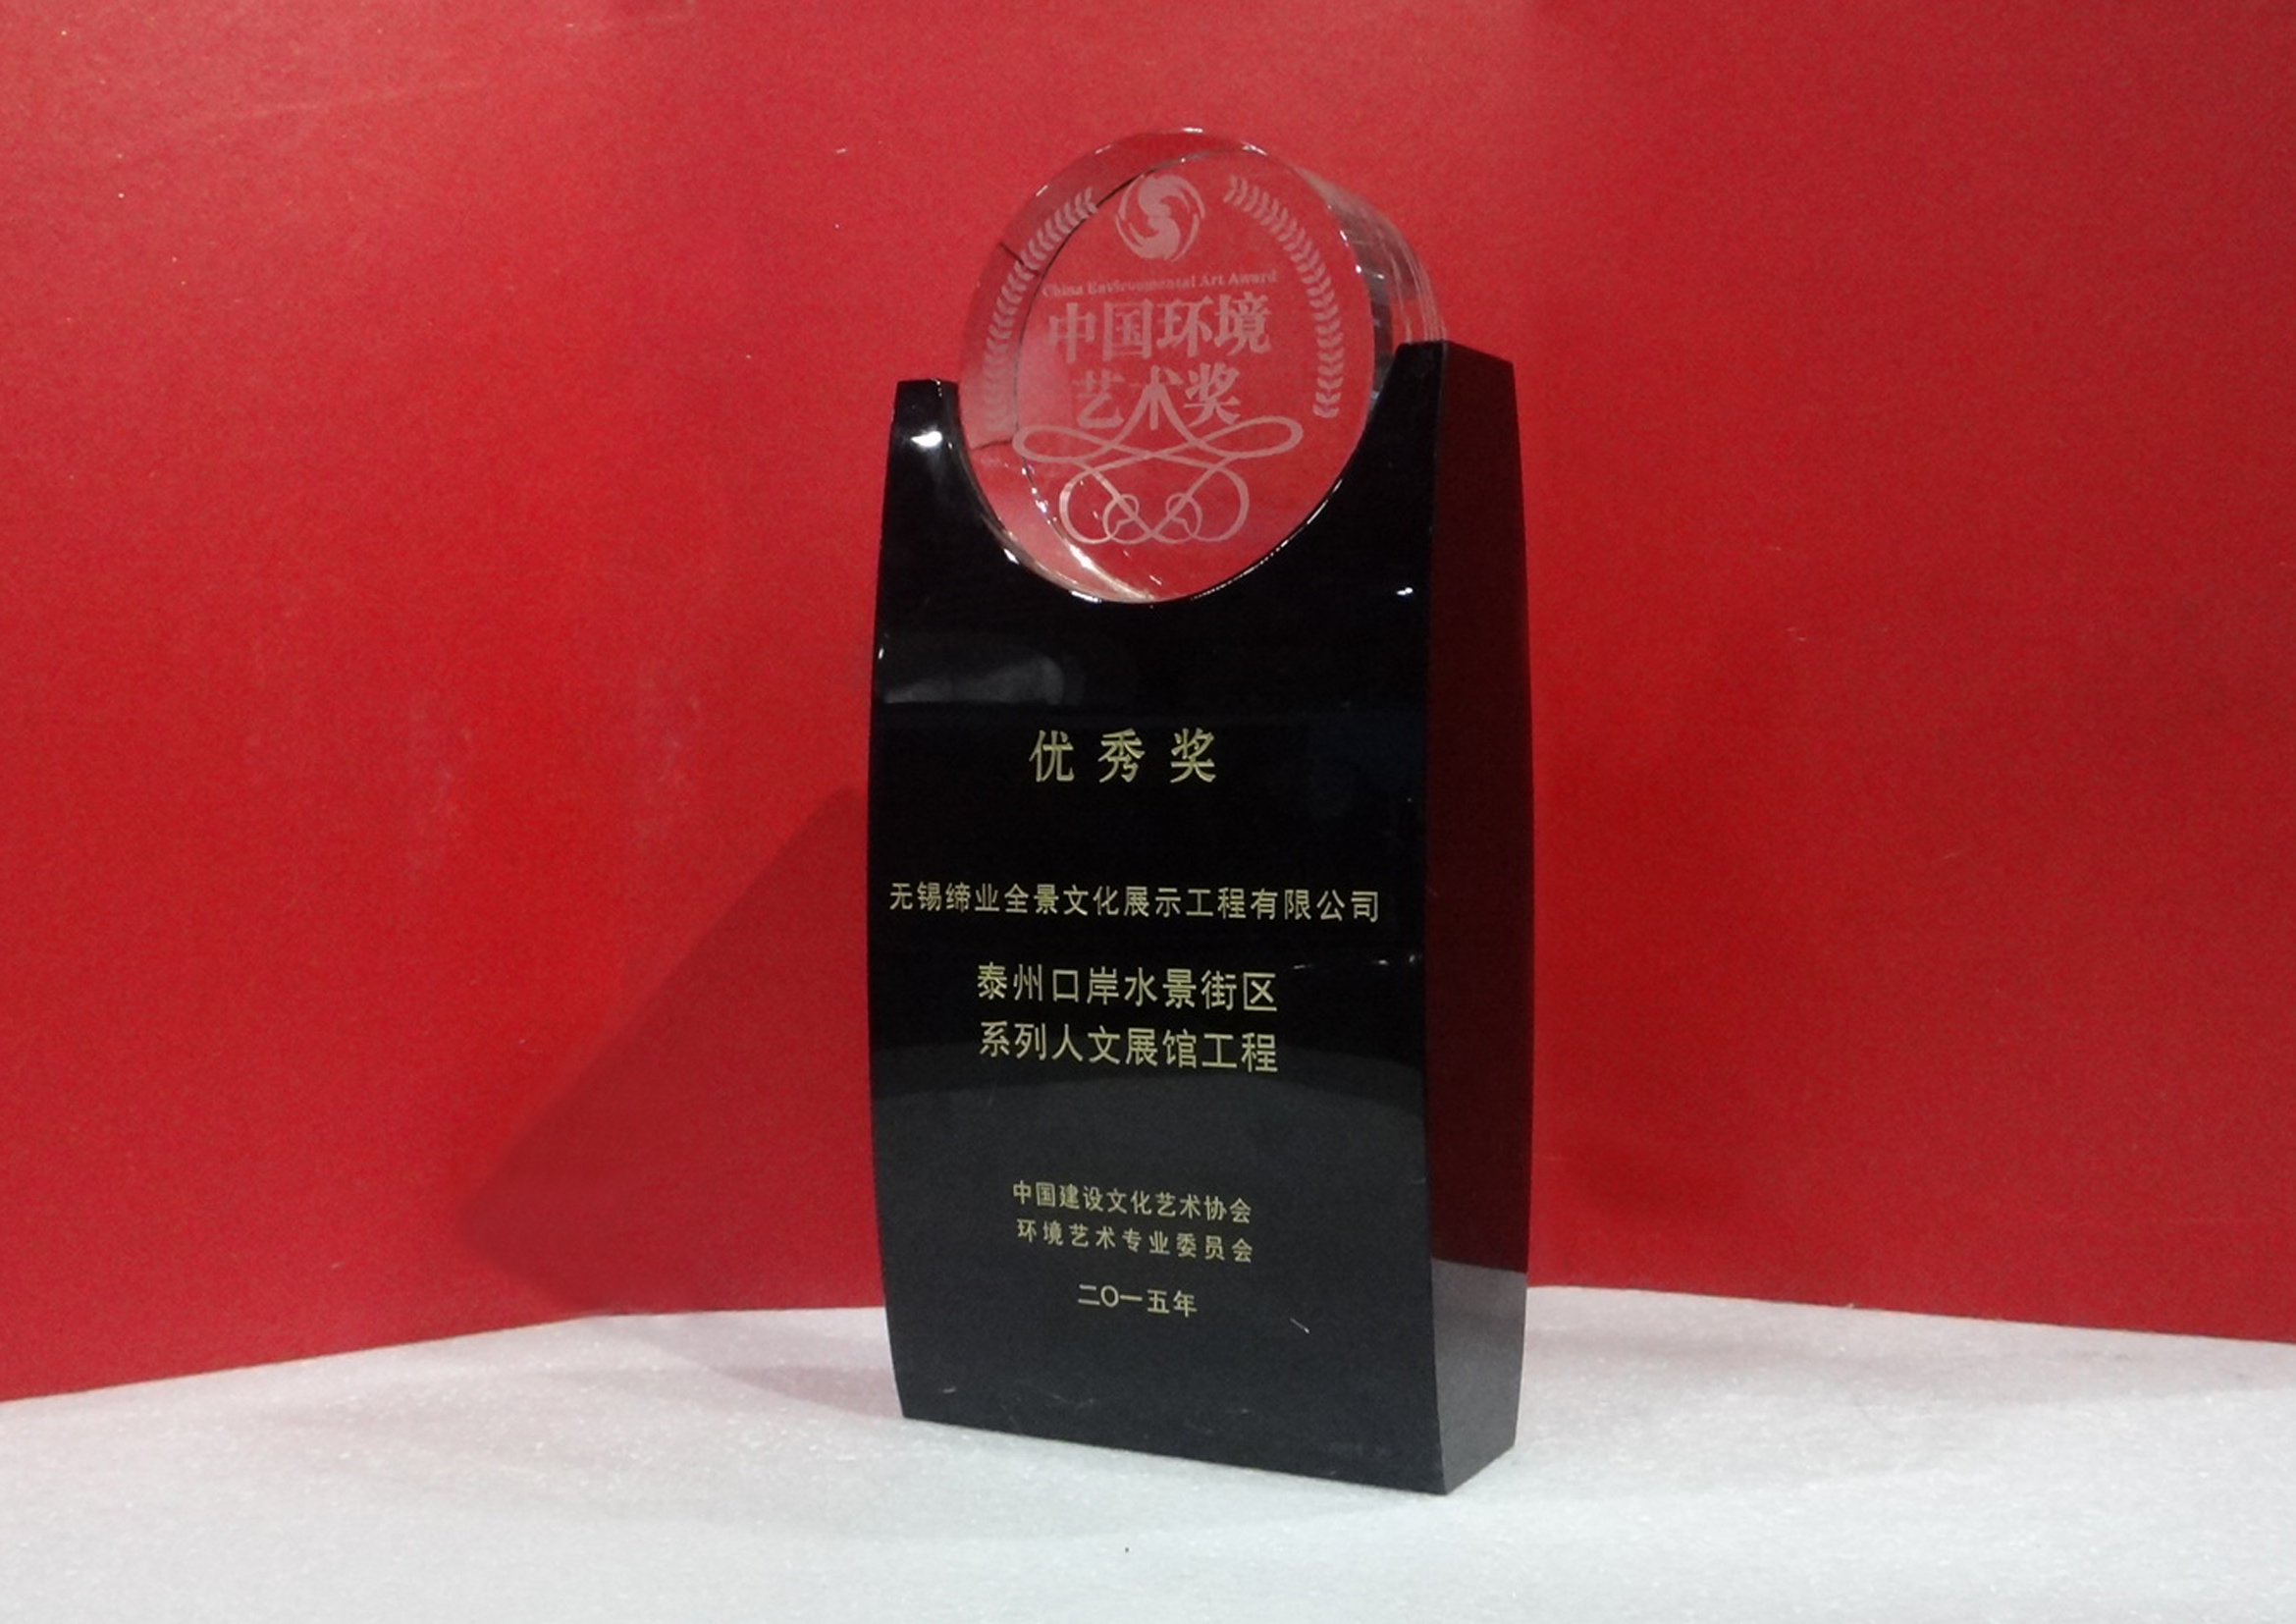 口岸街区系列人文展馆工程荣获第五届中国环境艺术优秀奖